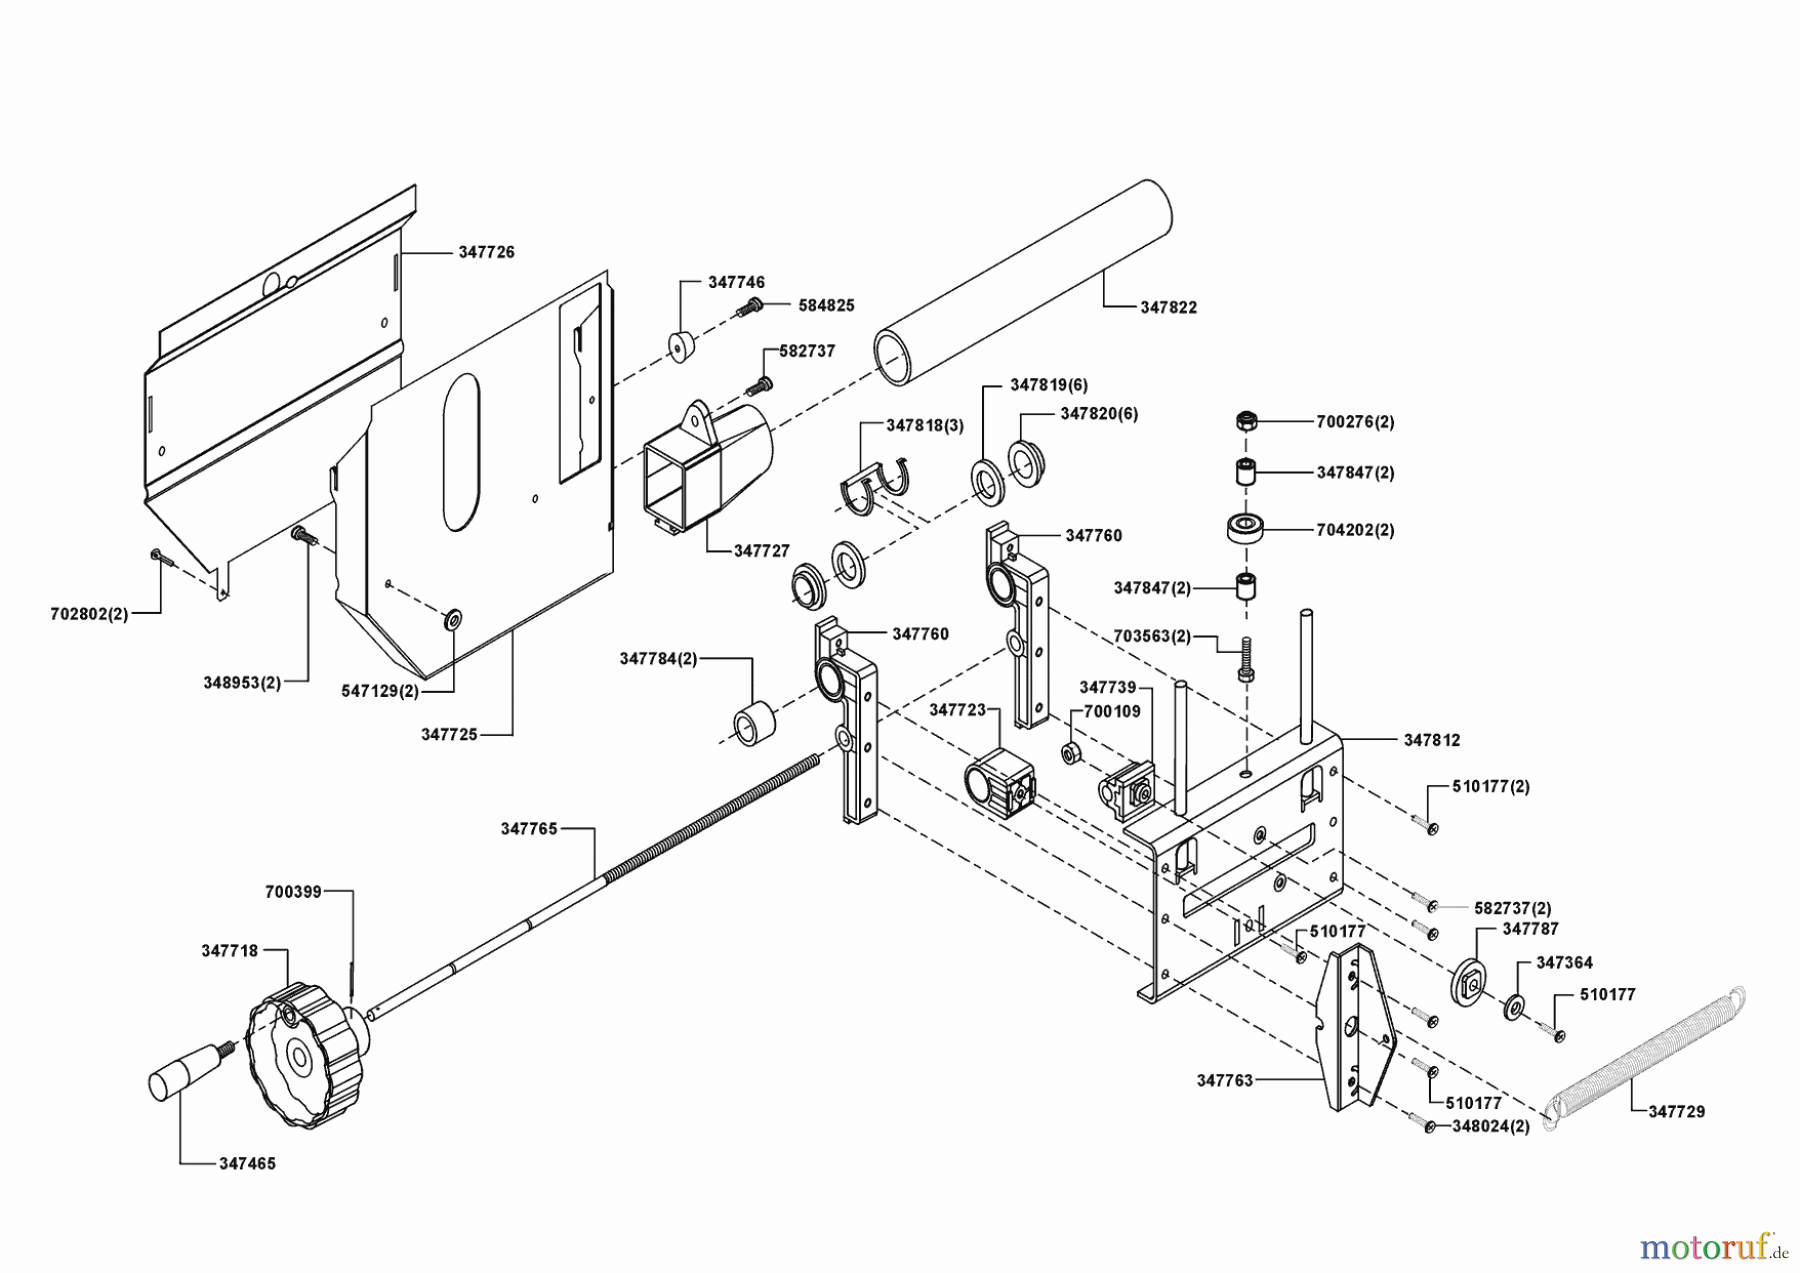  AL-KO Heimwerkertechnik Unterflurzugsäge UFS 240 E mit Box Seite 3